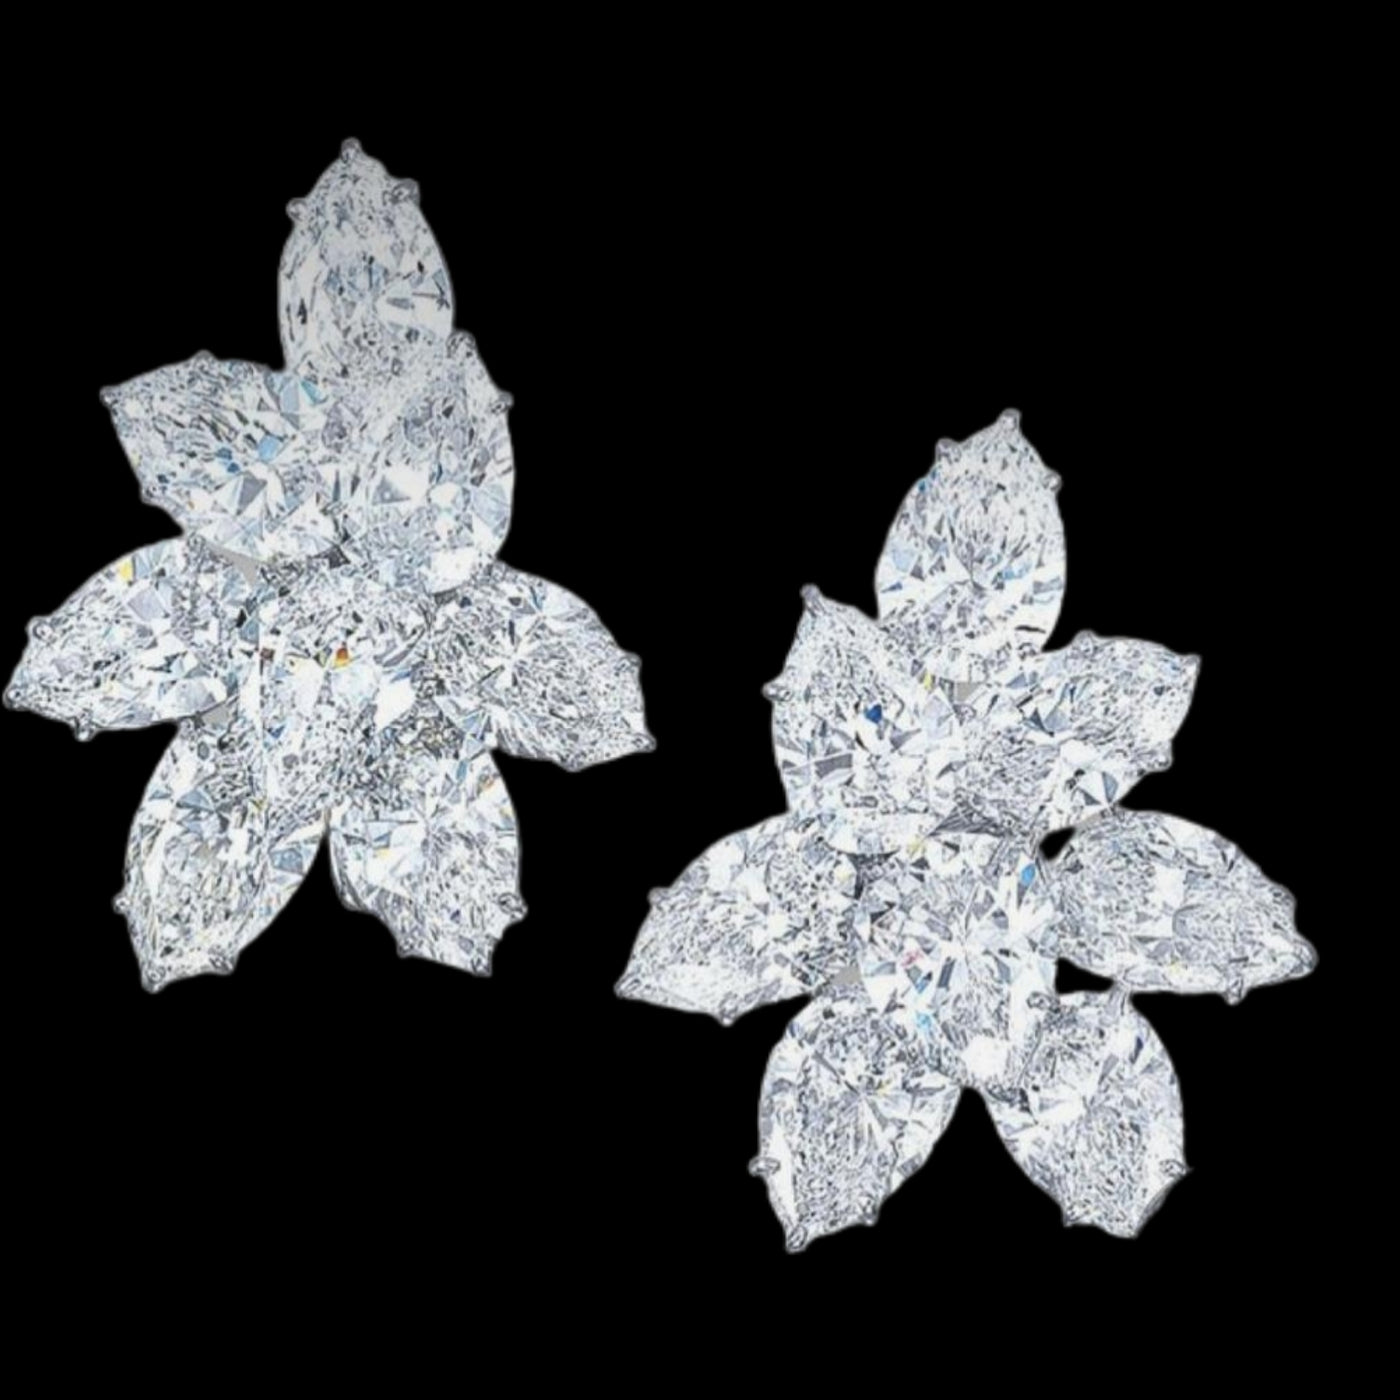 Michelle Diamond Earrings